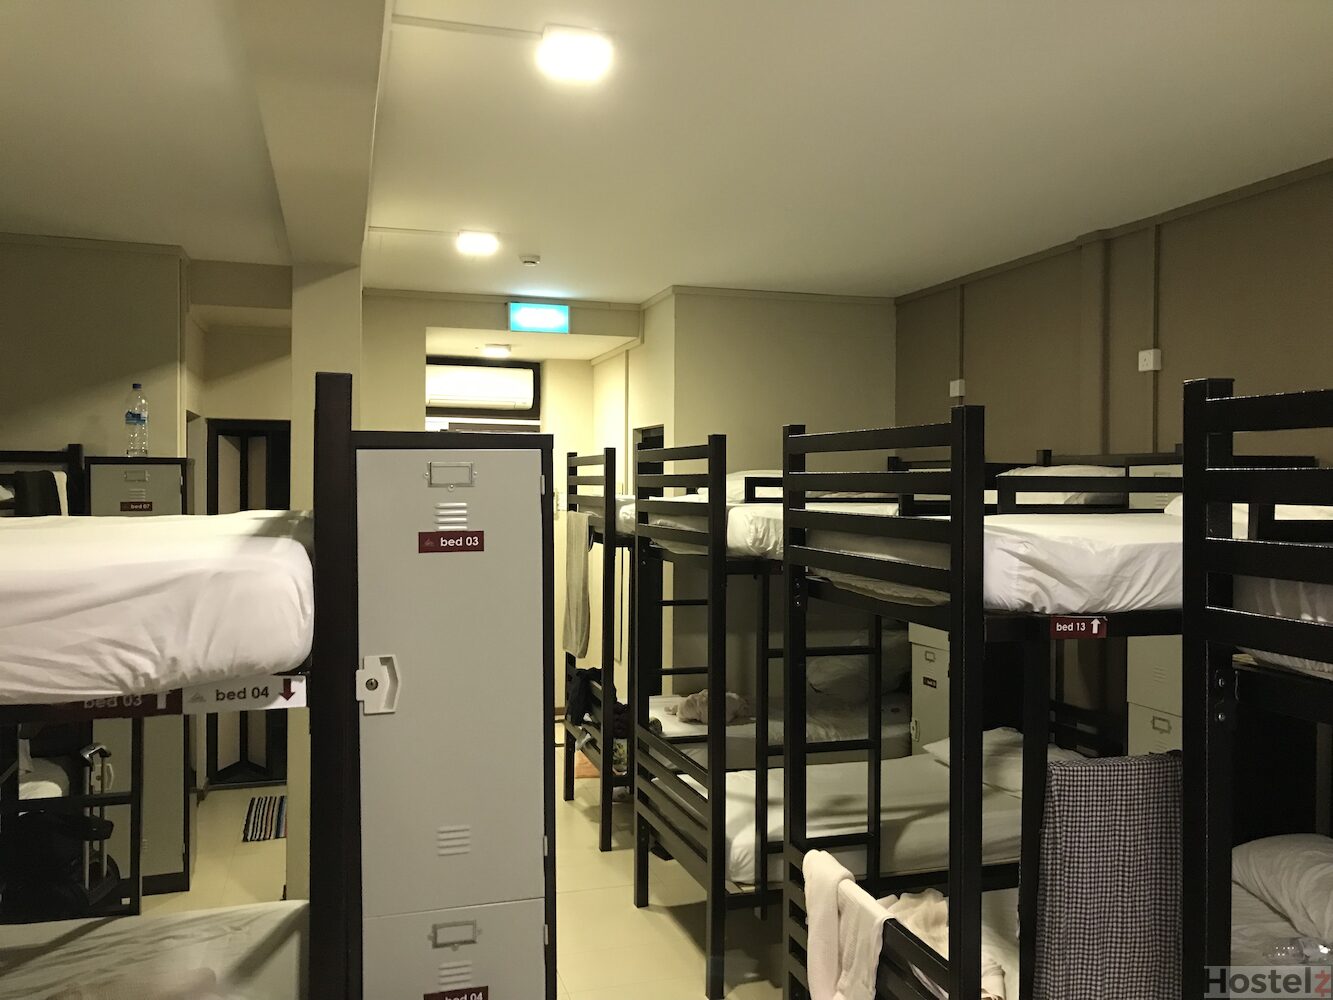 Dormitory & Locker